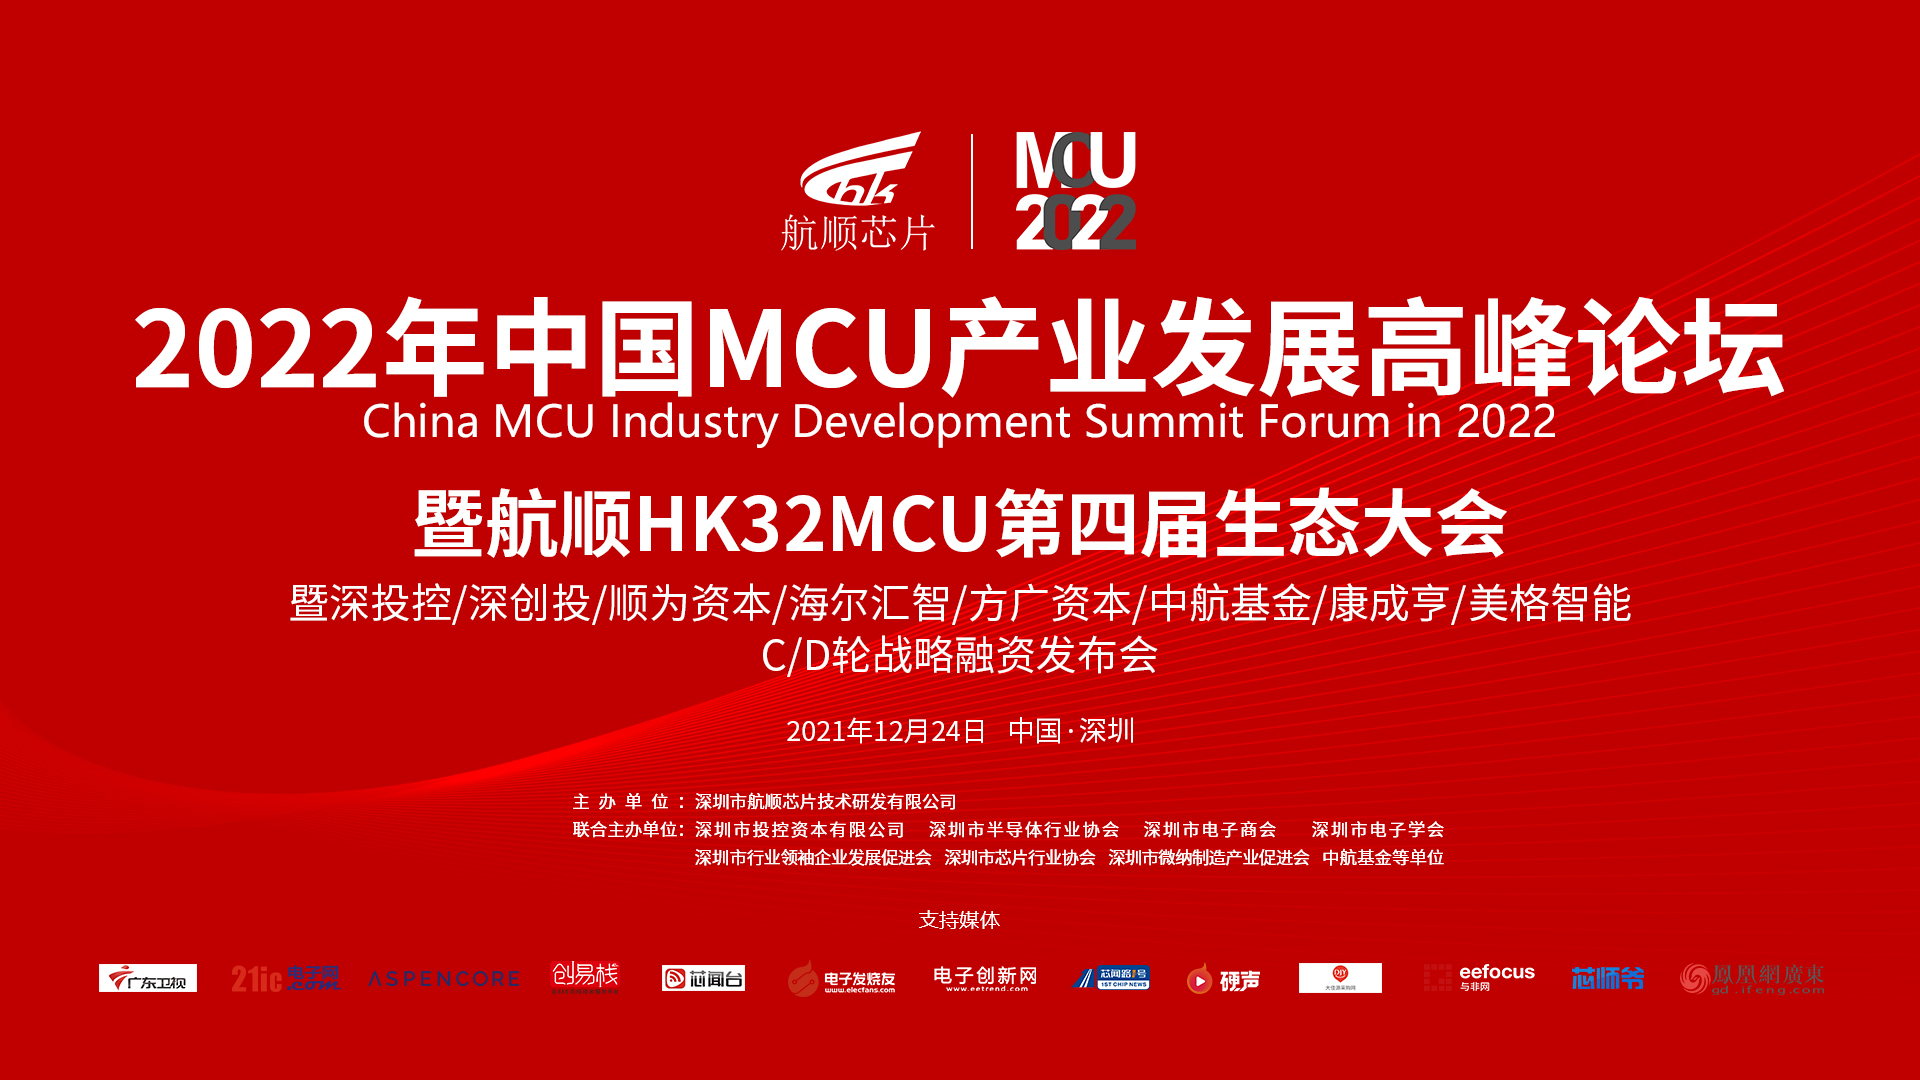 2022中国MCU产业发展高峰论坛暨航顺HK32MCU第四届生态大会成功举办，大咖云集争相分享中国MCU产业发展之道！